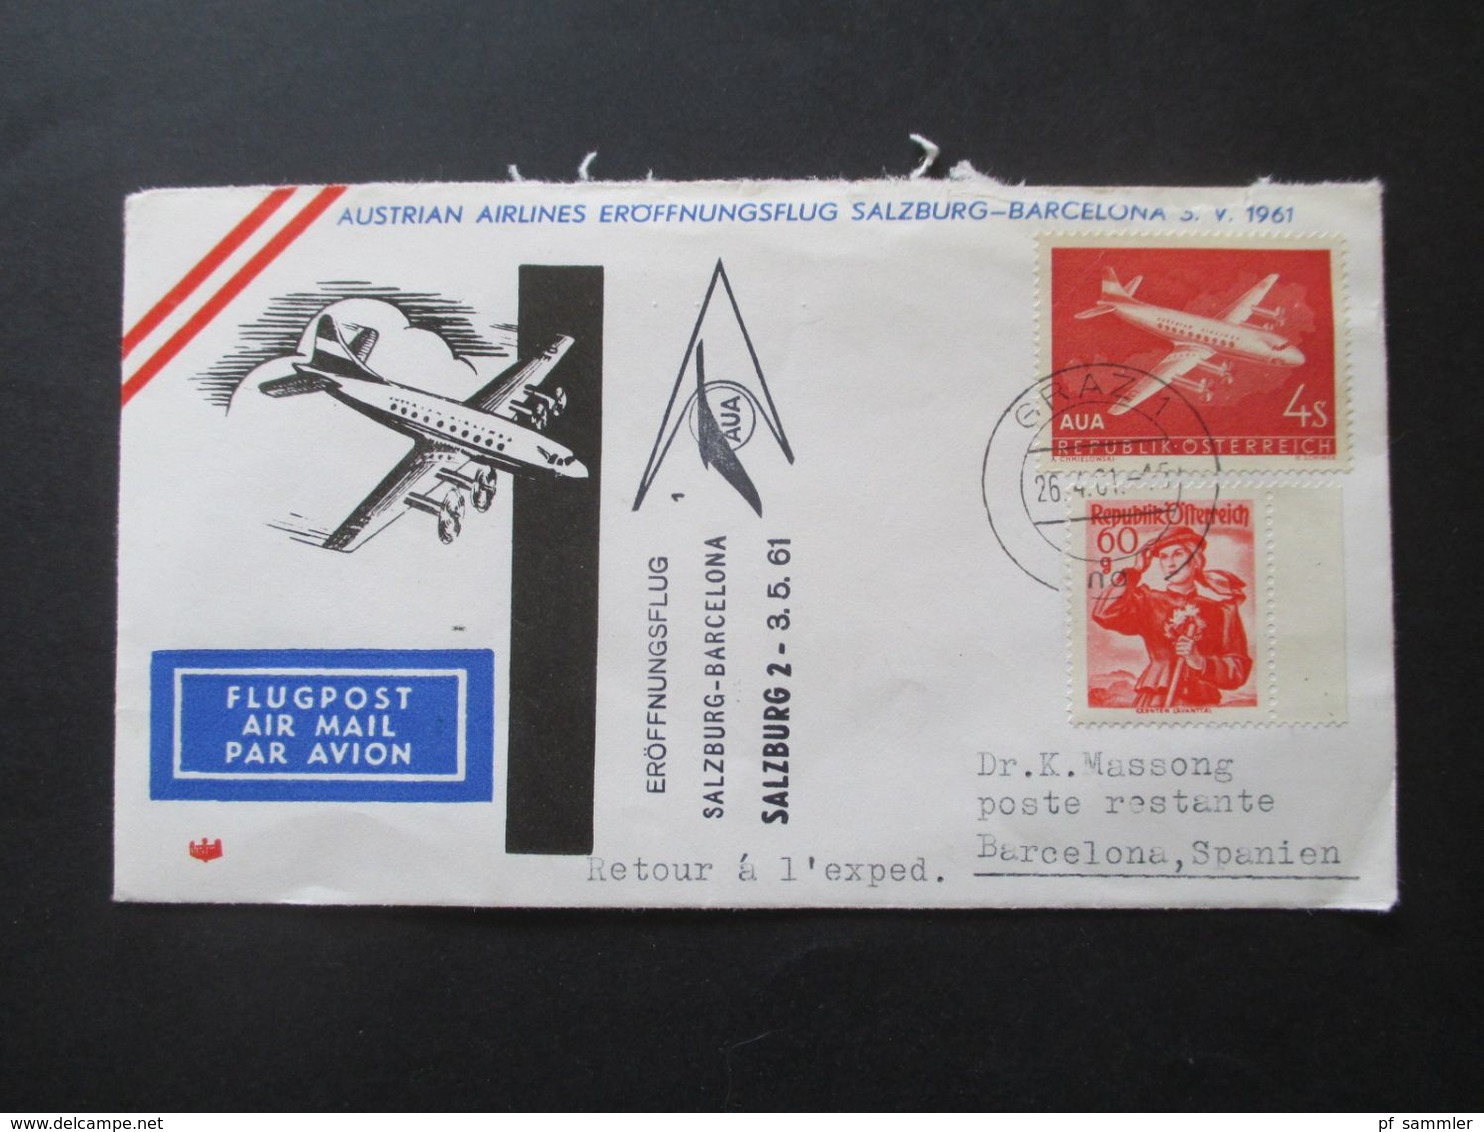 Österreich 1960 / 61 AUA Erstflüge 9 Belege + 1x Luposta Sternflug. Flugpost Belege / Poste Restante - Storia Postale